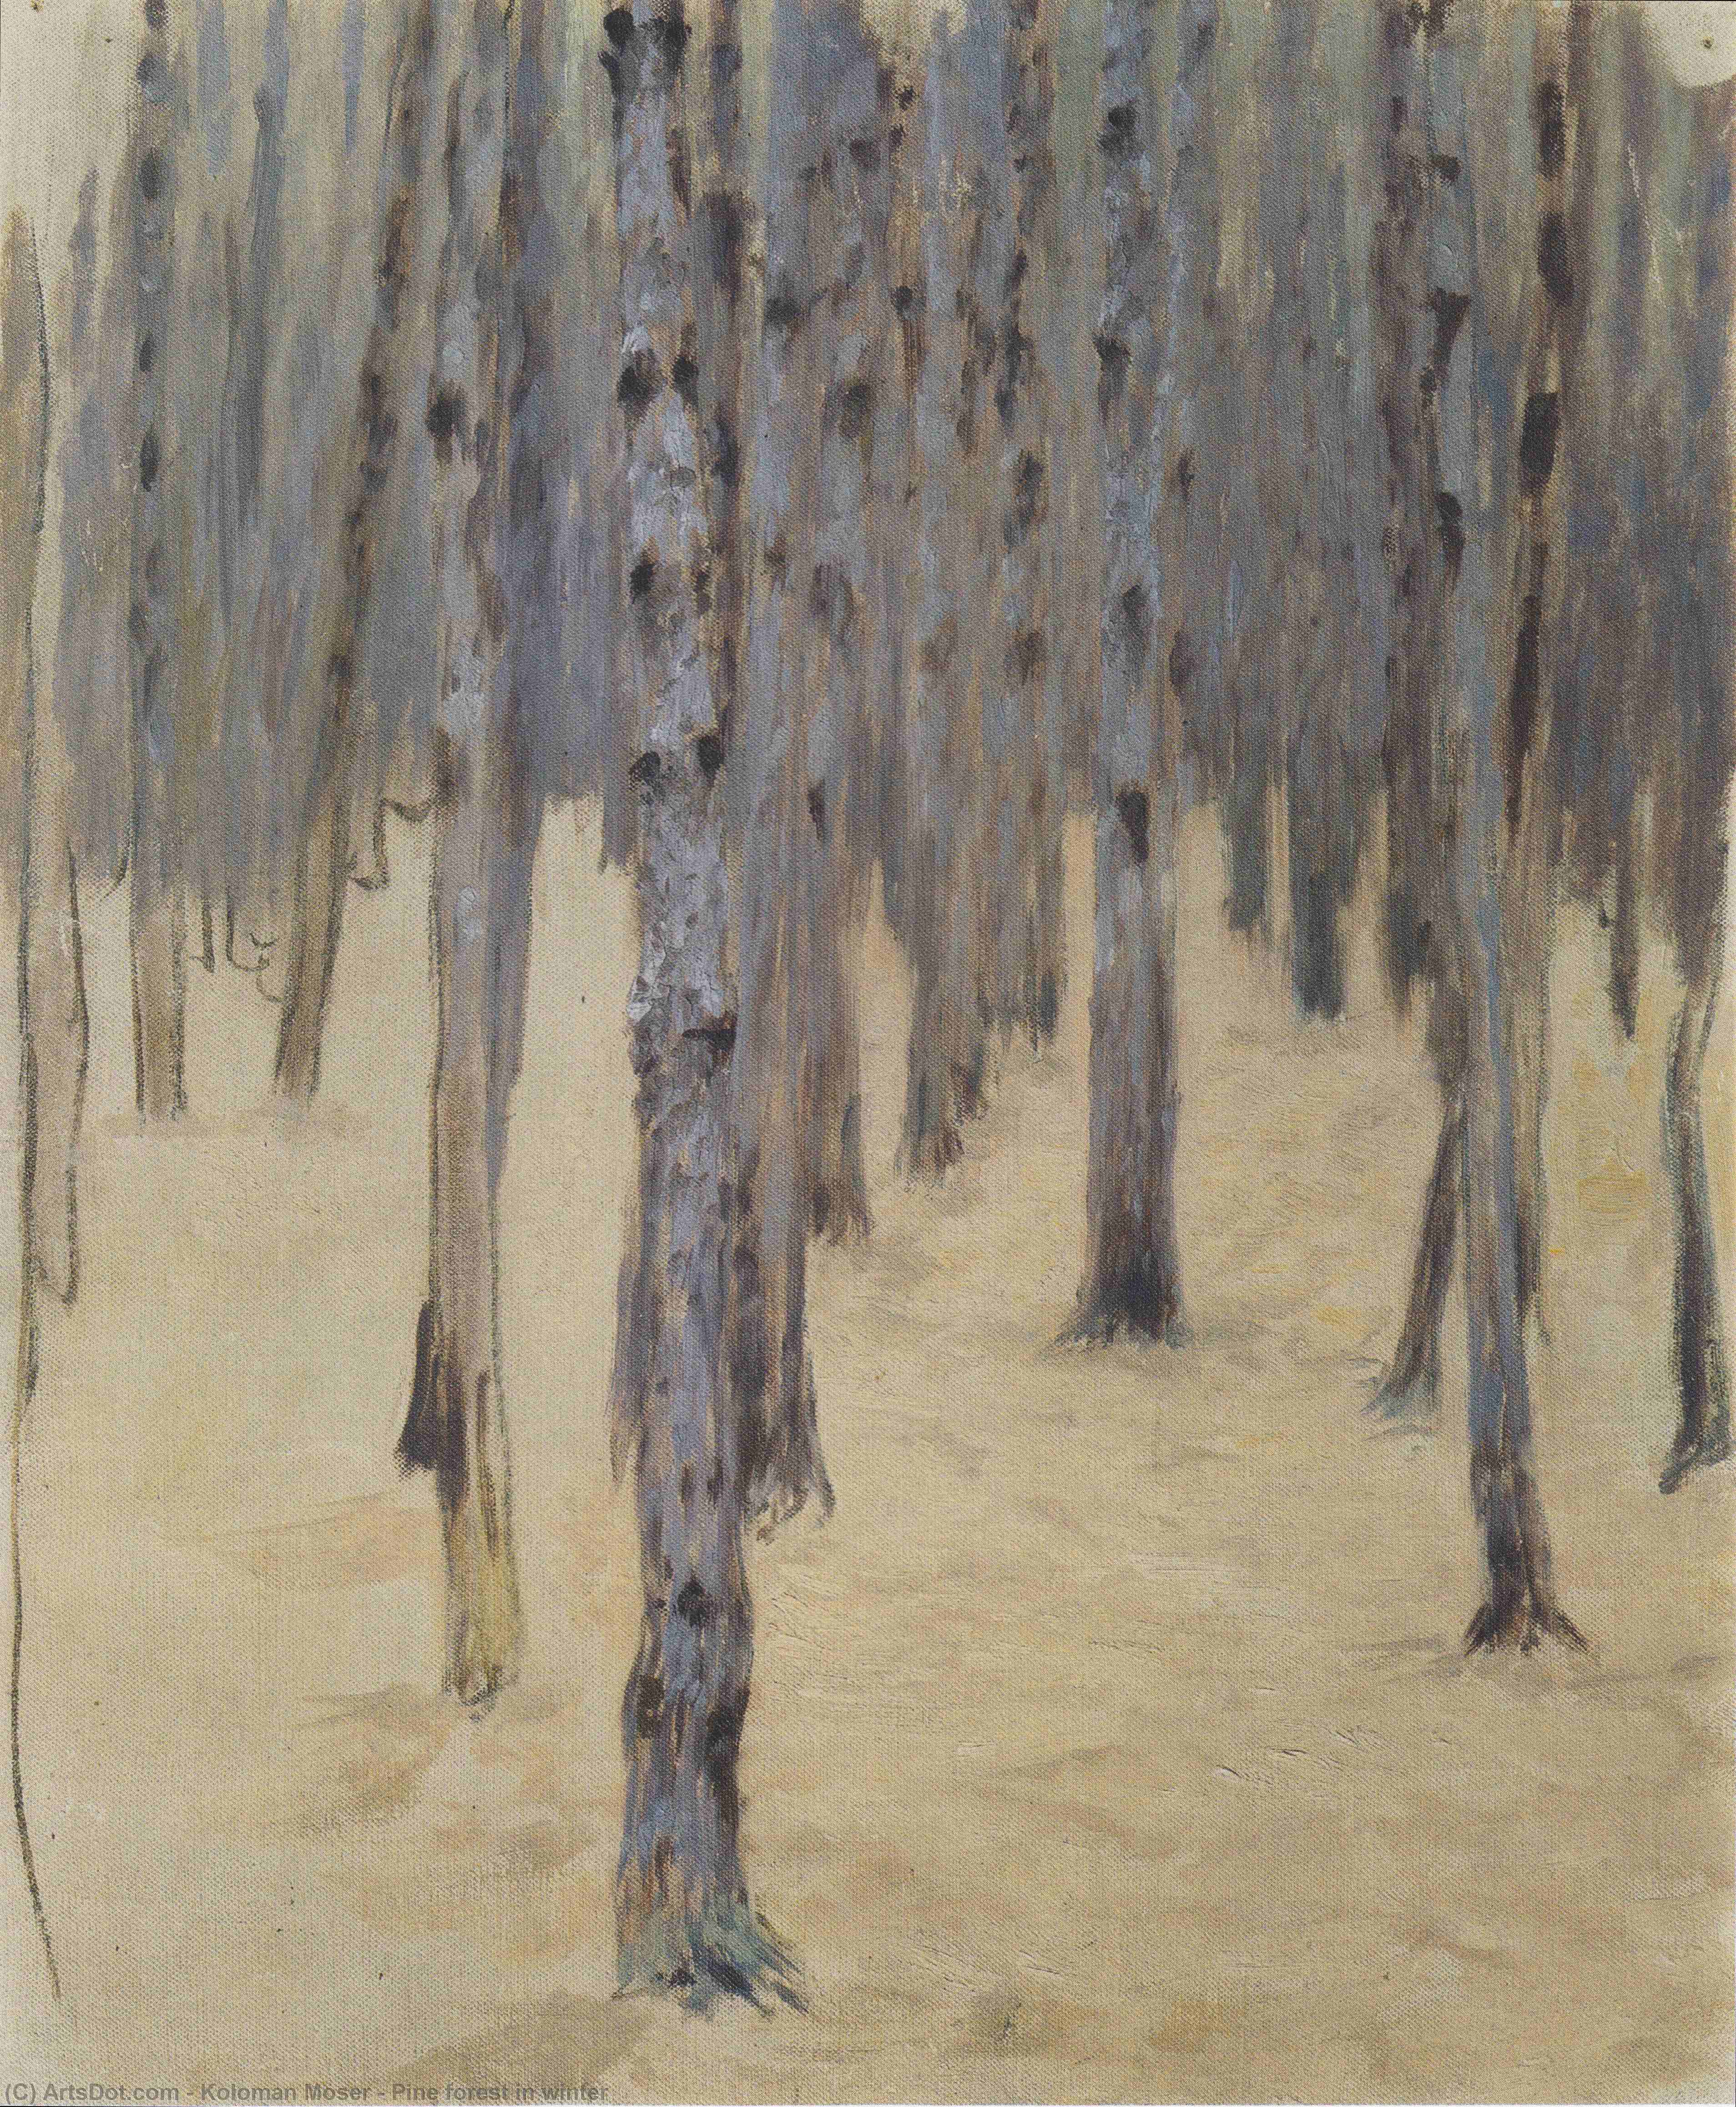 WikiOO.org - Encyclopedia of Fine Arts - Lukisan, Artwork Koloman Moser - Pine forest in winter